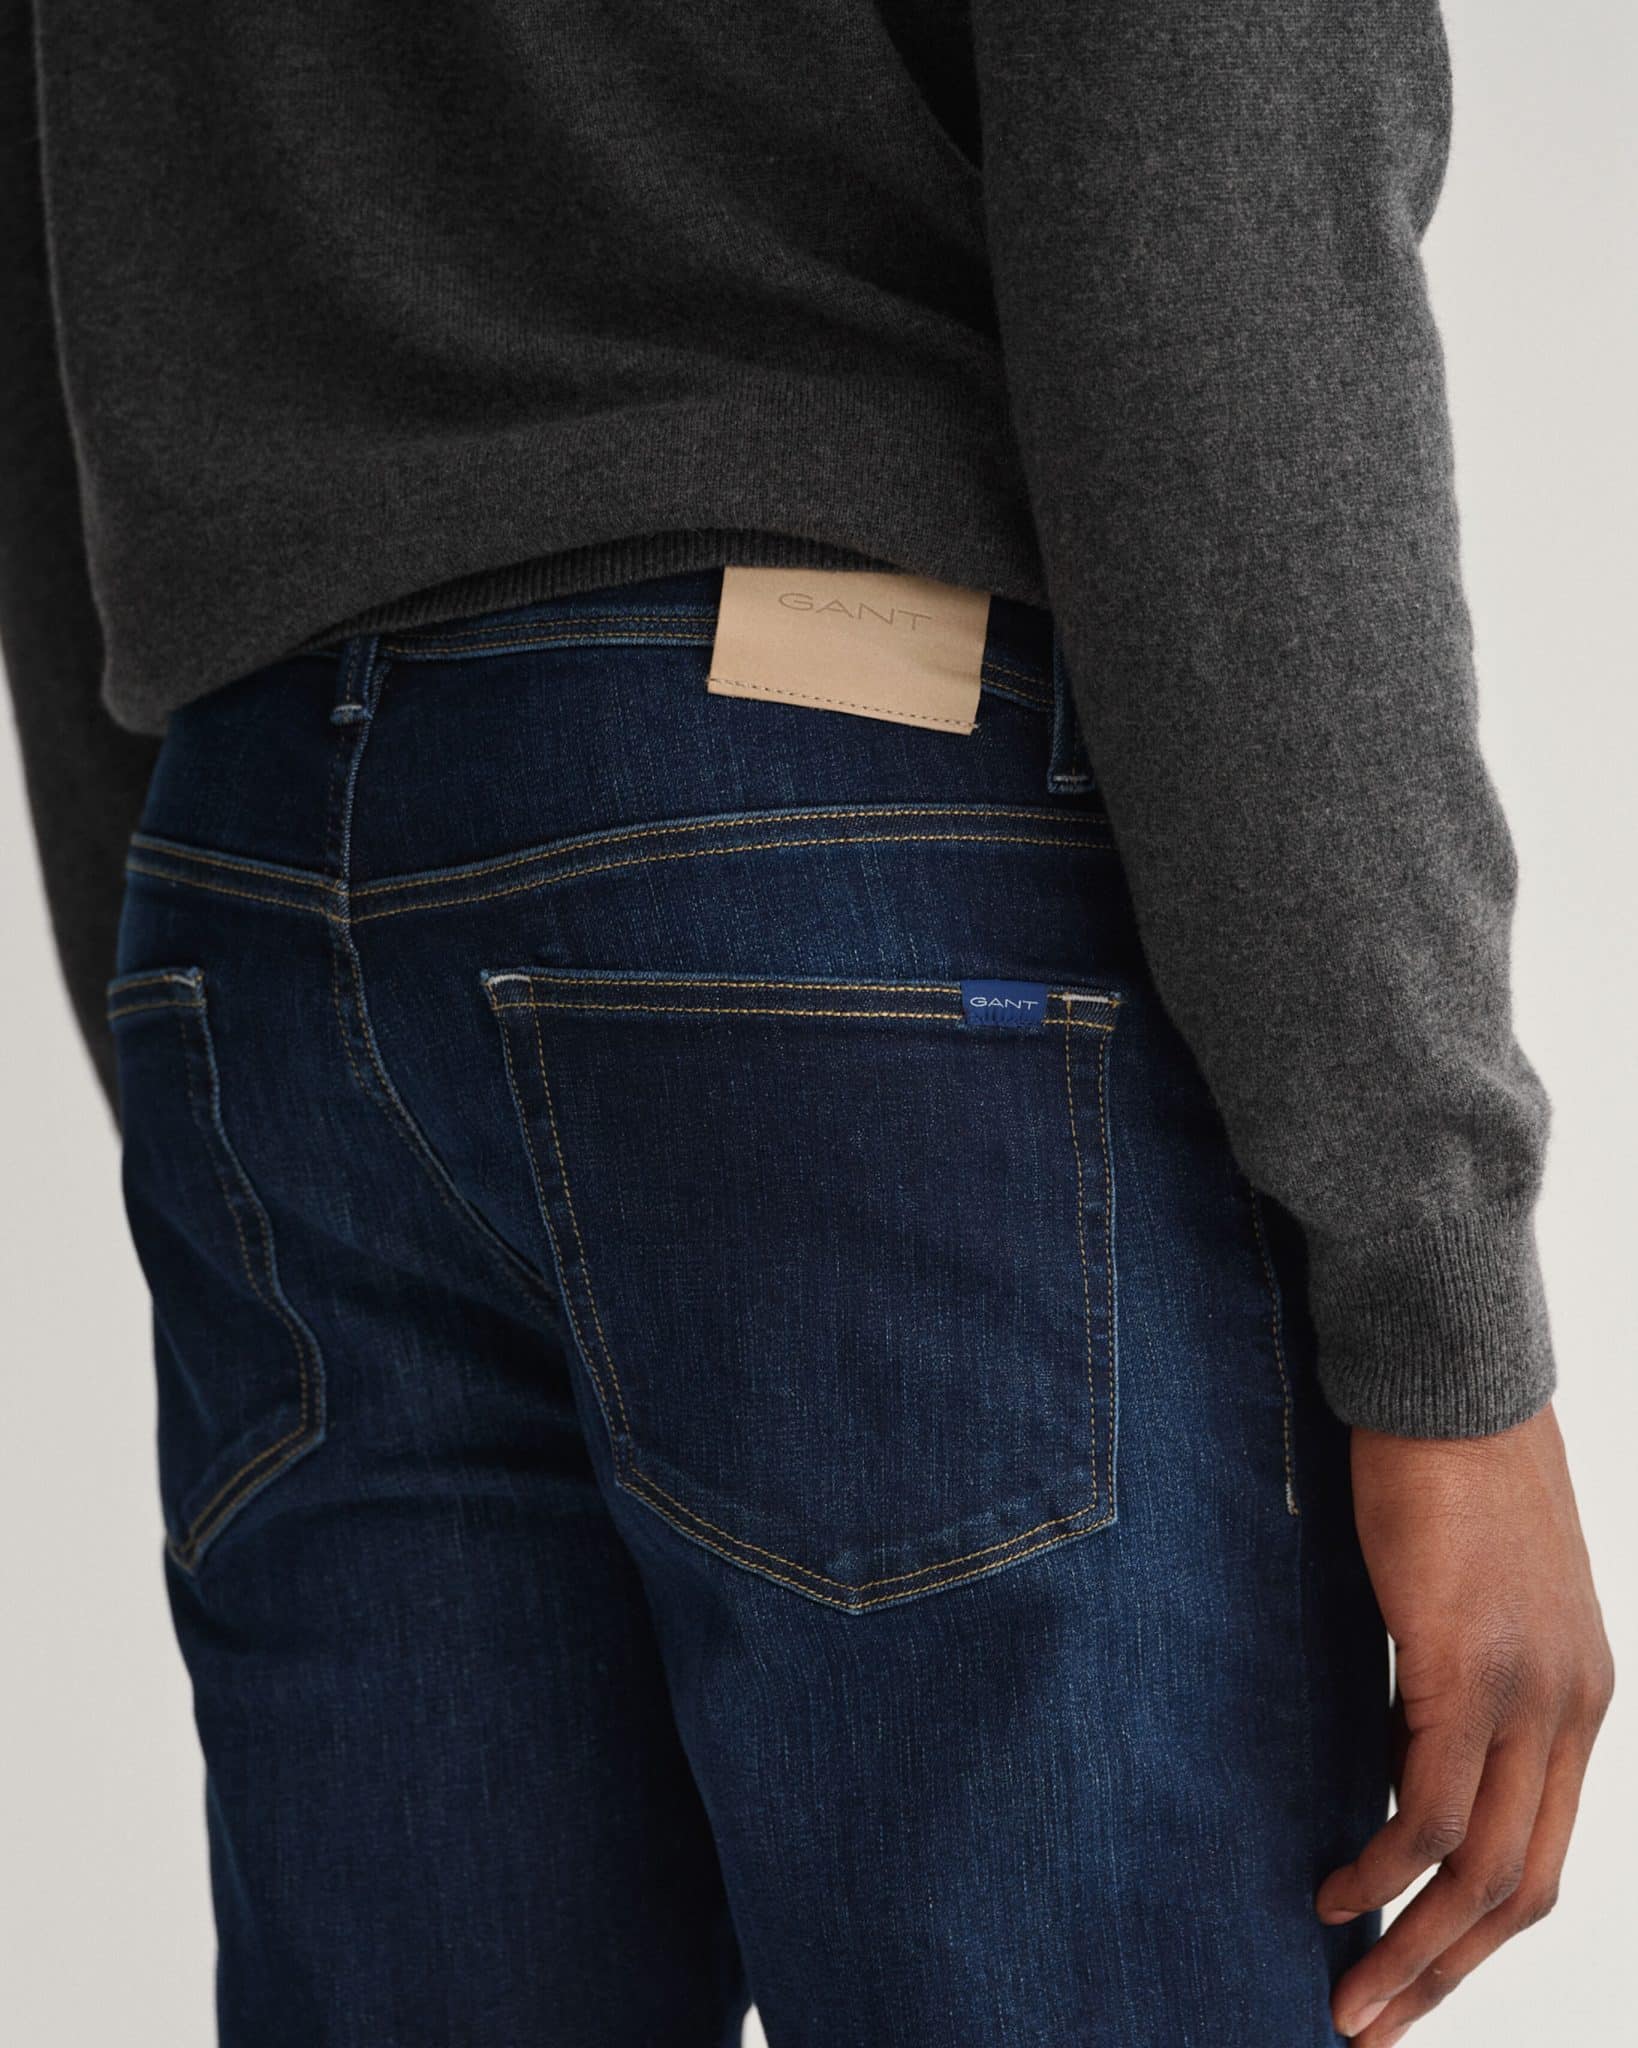 Monkeegenes straight jeans Blue 32                  EU MEN FASHION Jeans Worn-in discount 71% 